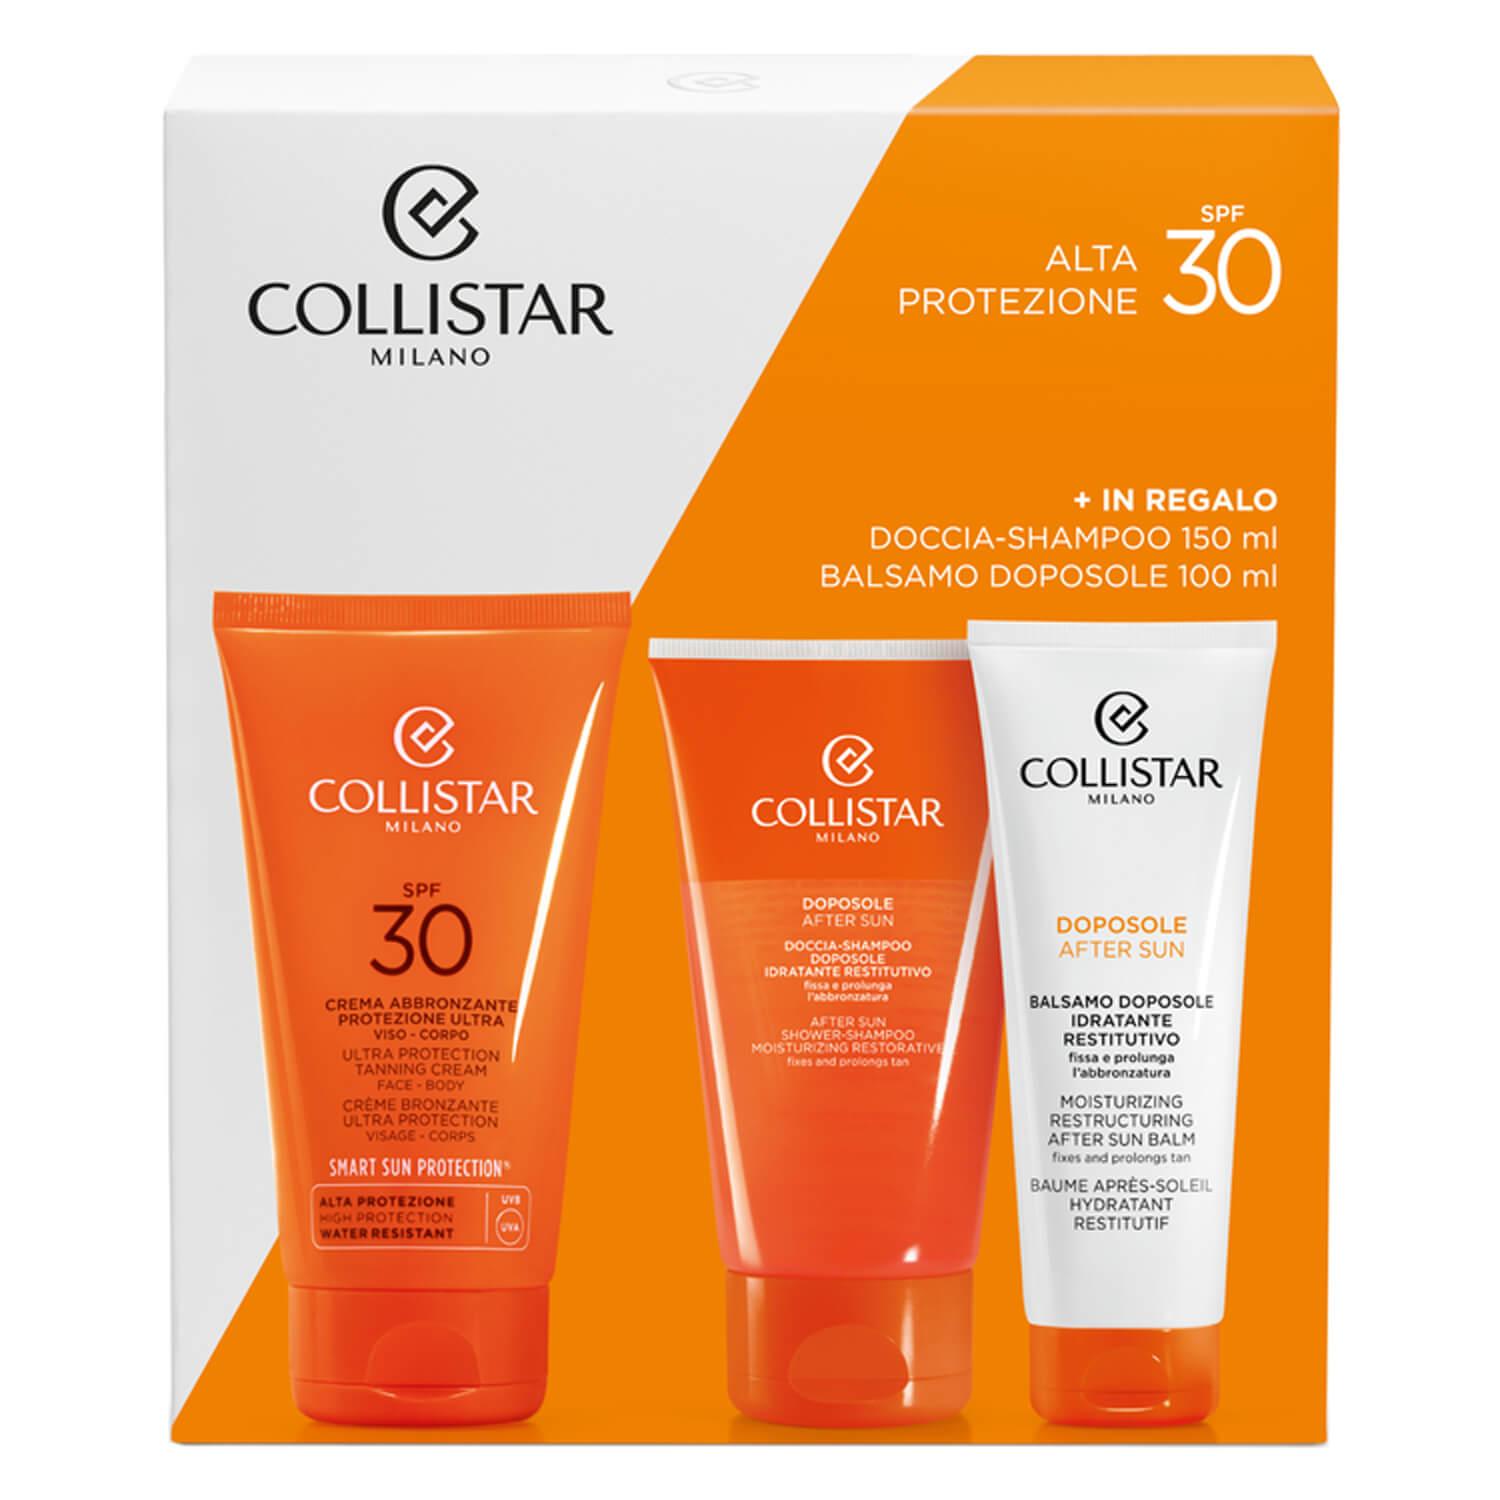 CS Sun - Ultra Protection Tanning Cream Kit SPF30